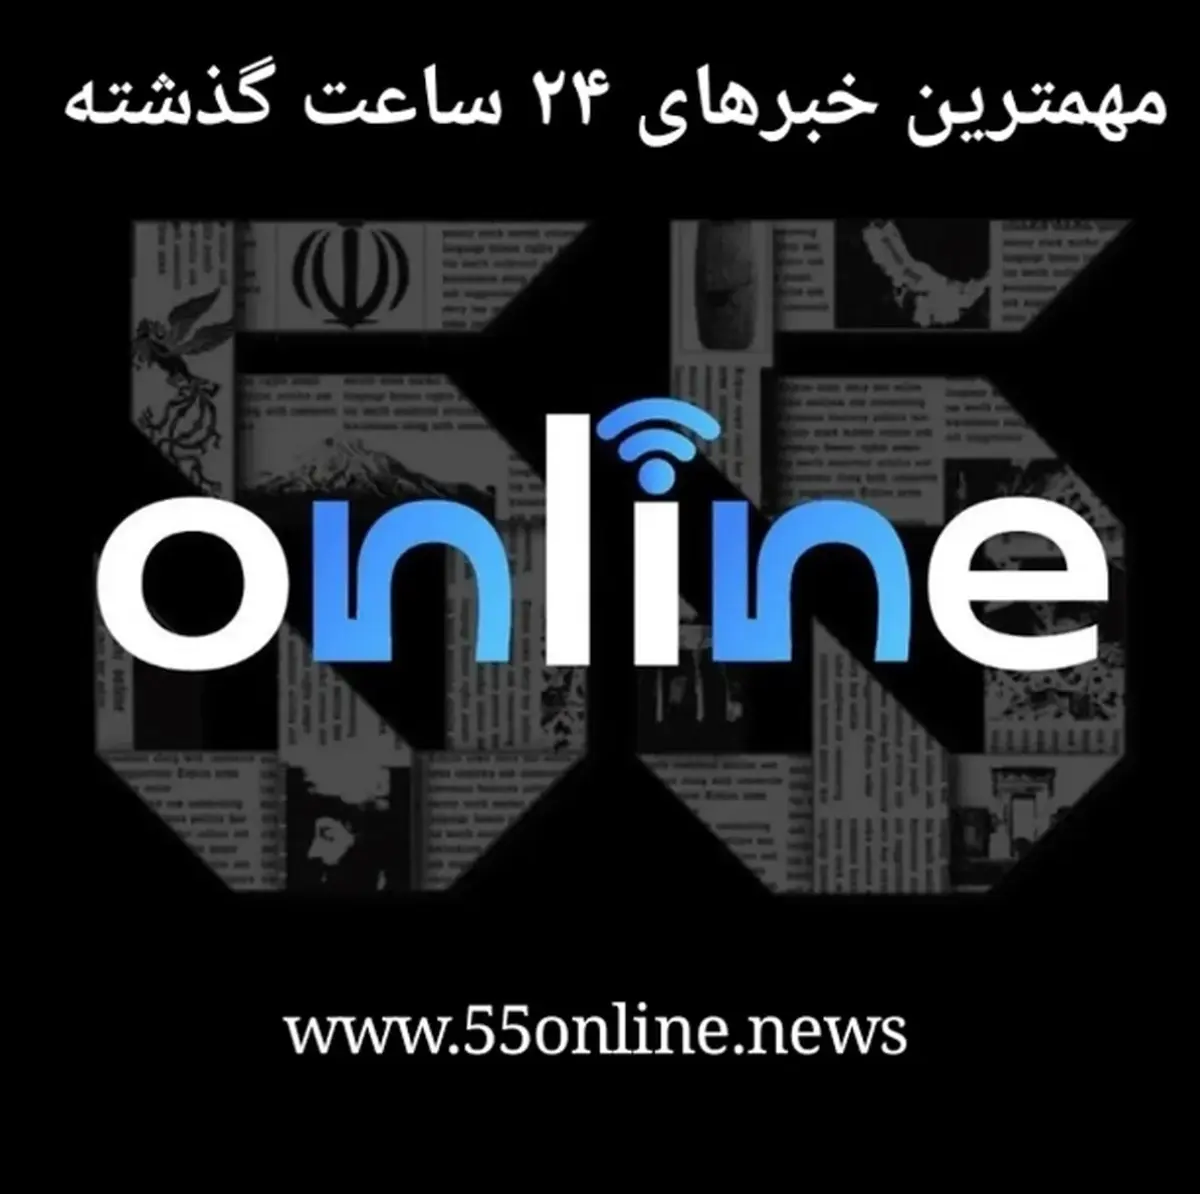 مروری به اخبار و اتفاقات مهم امروز | خلاصه اخبار مهم روز ۲۳ خرداد